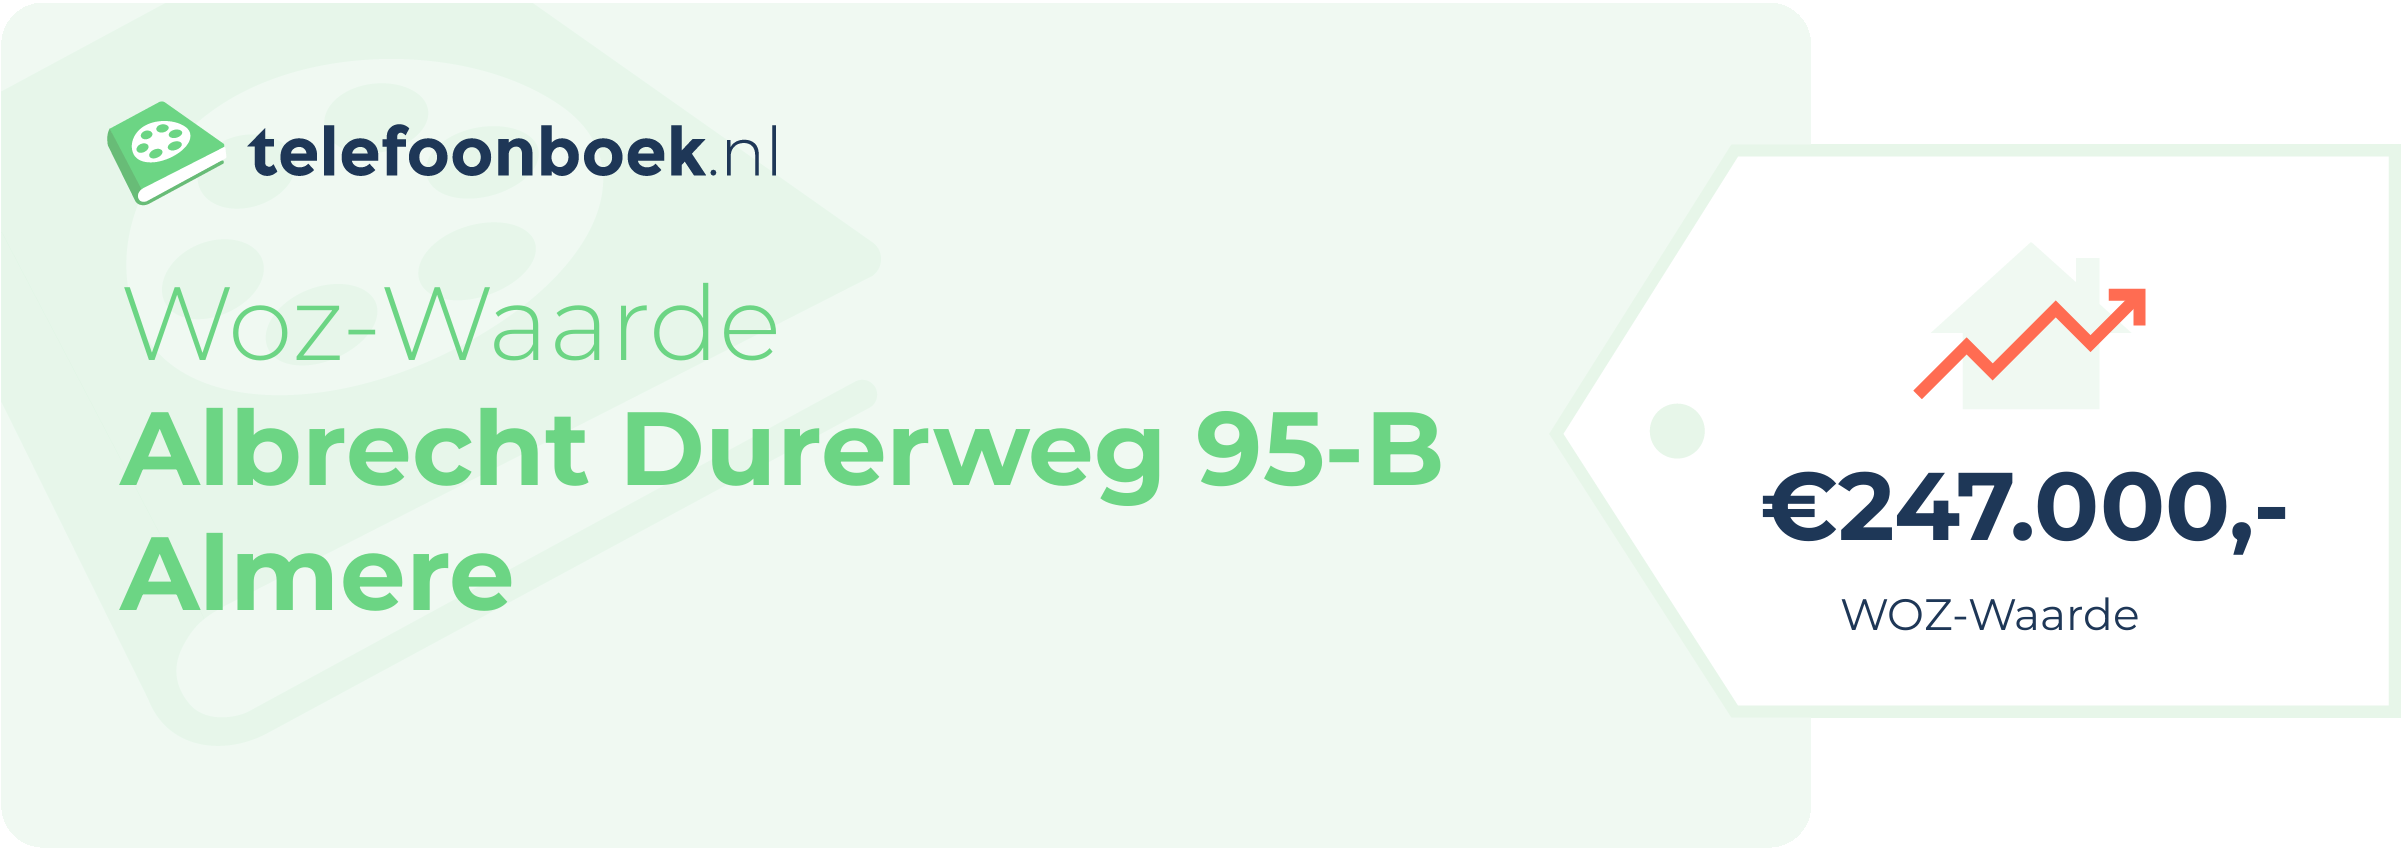 WOZ-waarde Albrecht Durerweg 95-B Almere